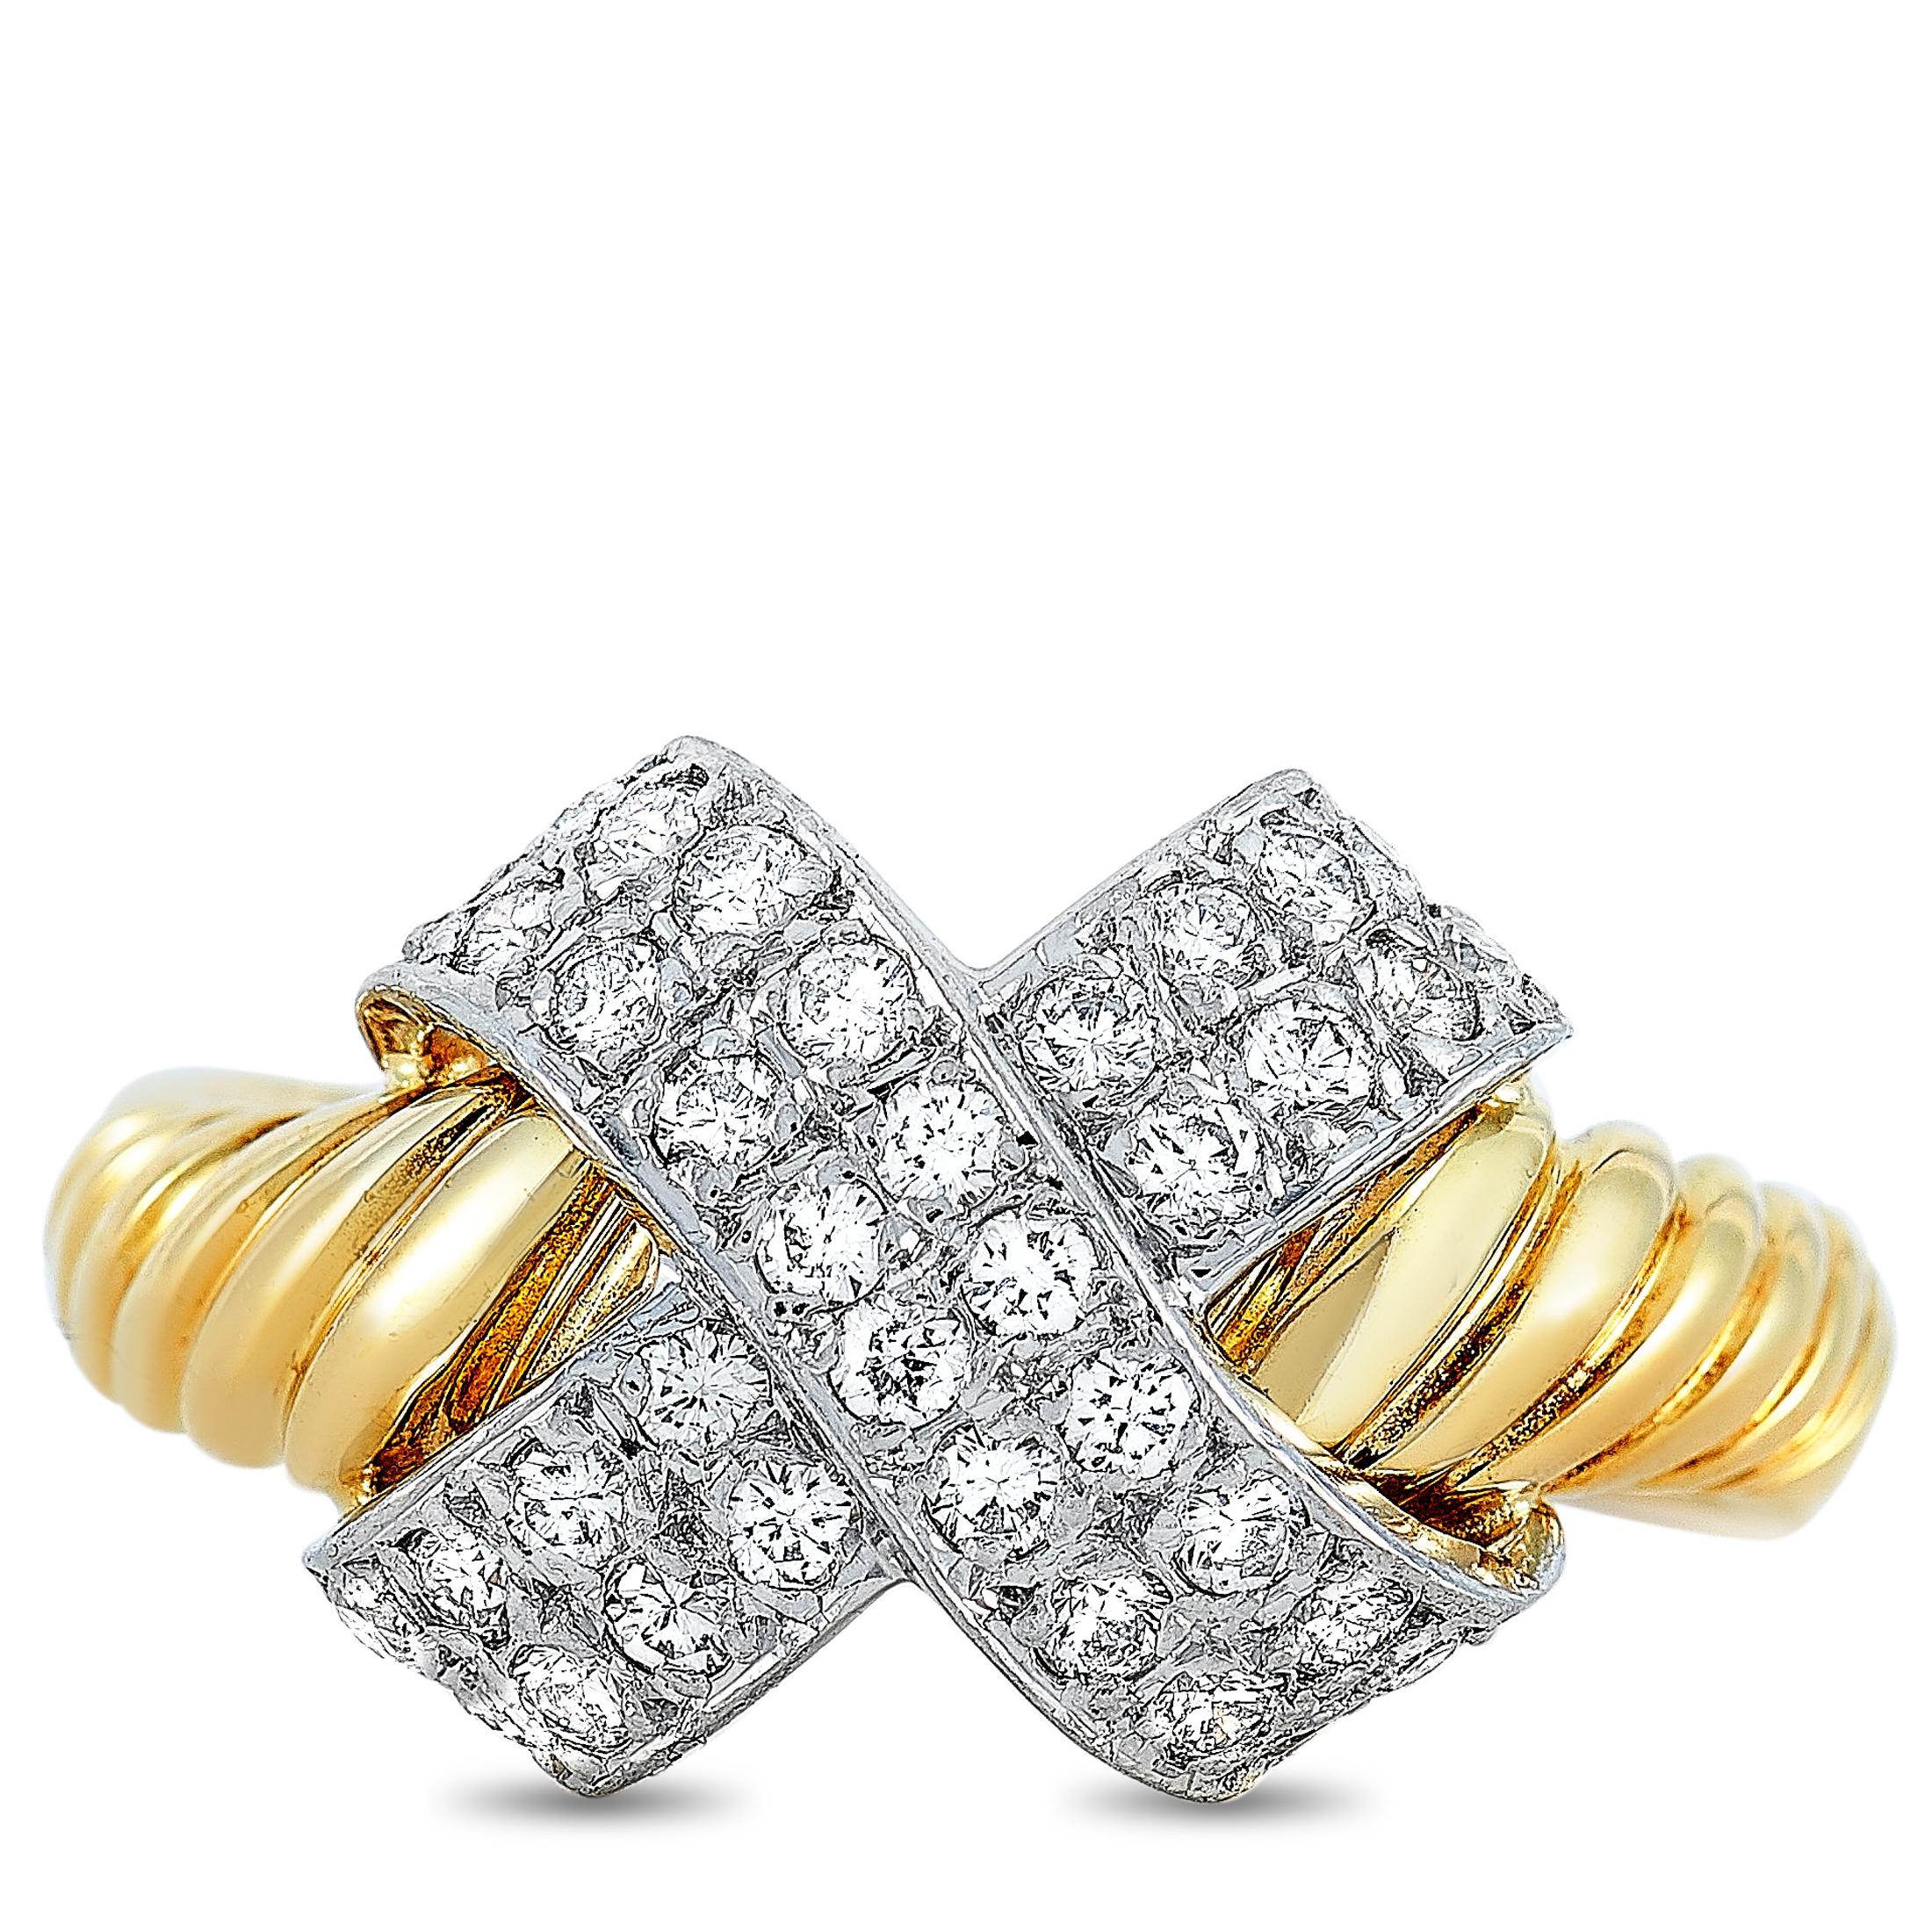 Women's Lanvin 18 Karat Yellow and White Gold 0.45 Carat Diamond Ring